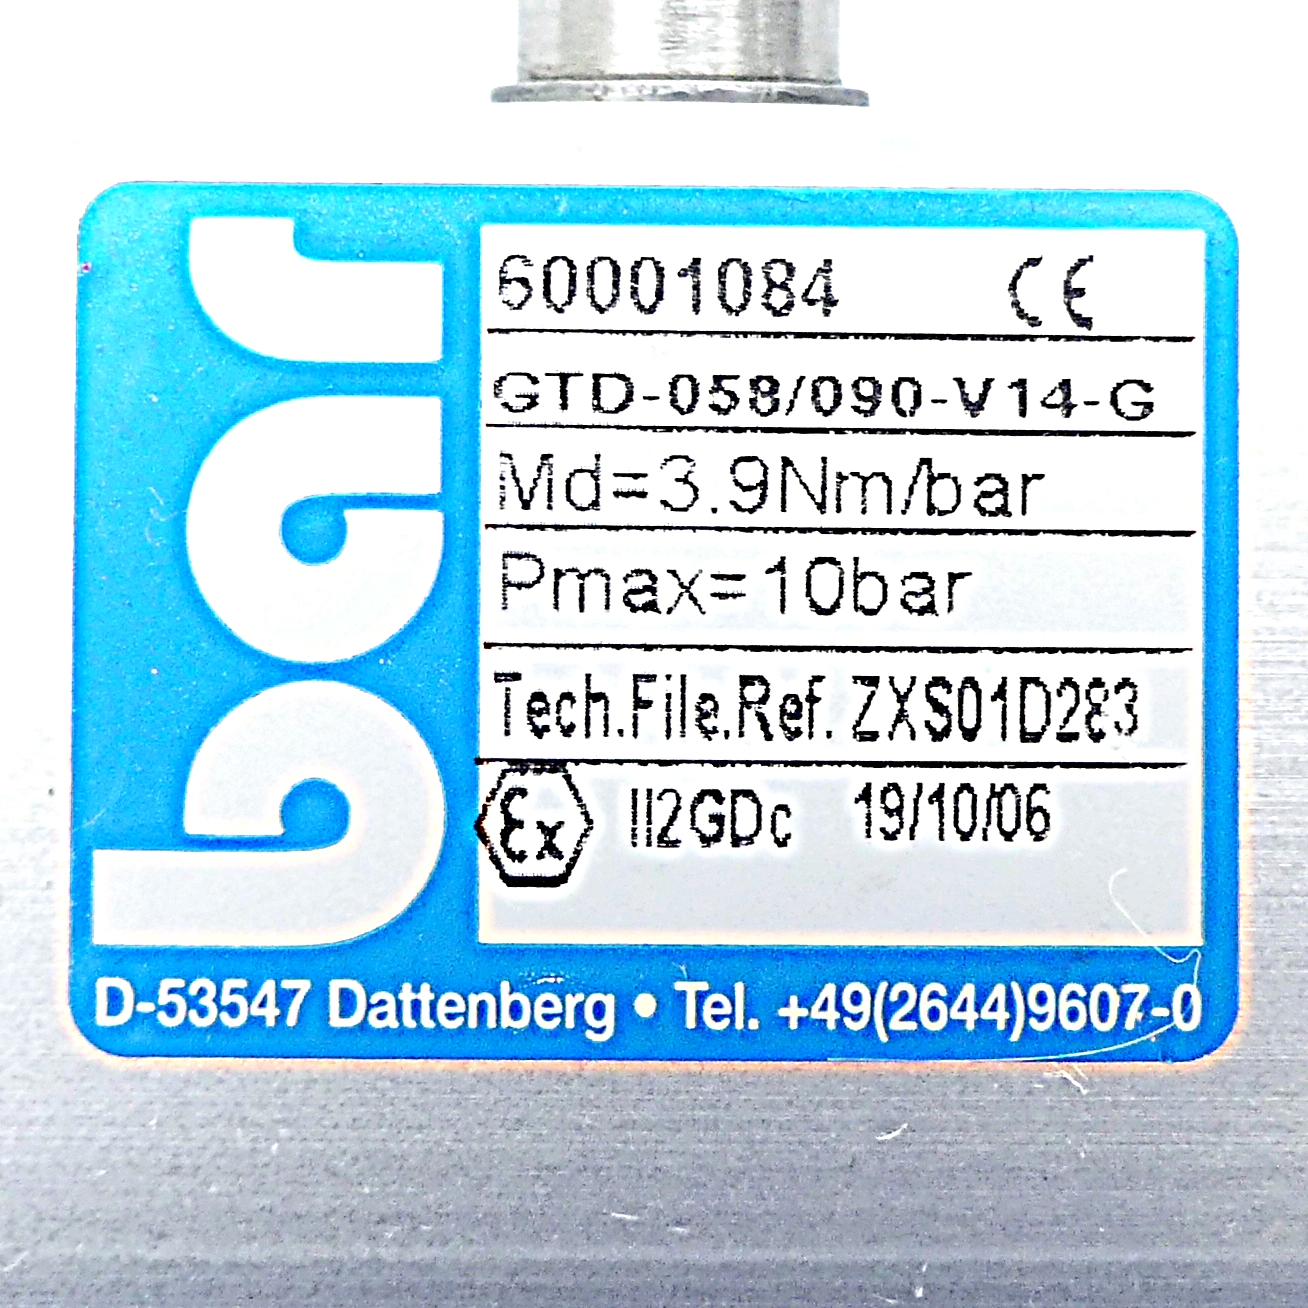 Pneumatischer Schwenkantrieb GTD-058/090-V14-G 